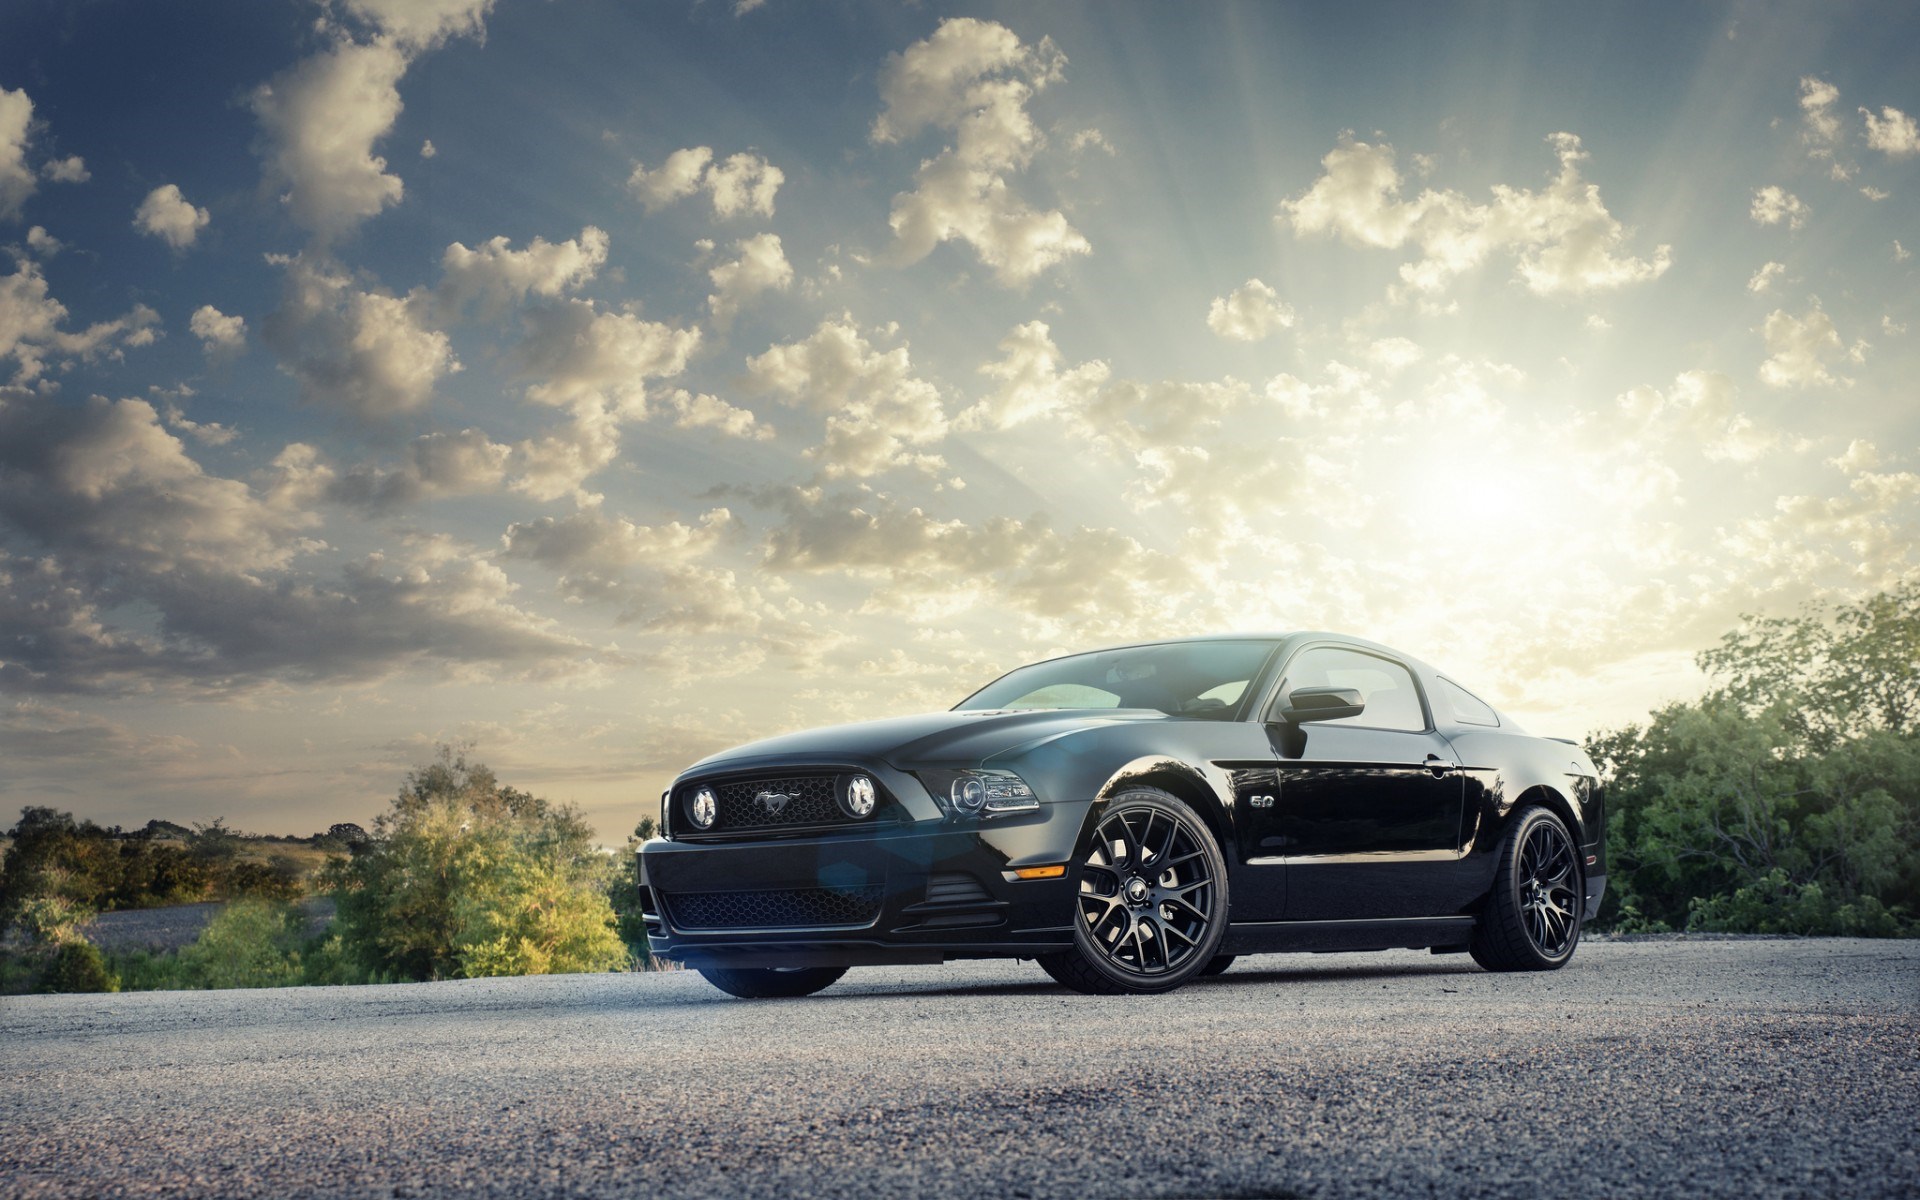 Không ai có thể phủ nhận được sức hút đặc biệt của chiếc xe hơi Ford Mustang - biểu tượng của sức mạnh và tảng băng phiêu lưu. Hãy cùng chiêm ngưỡng hình ảnh của chiếc xe hơi này và đắm mình trong khung cảnh tuyệt đẹp.